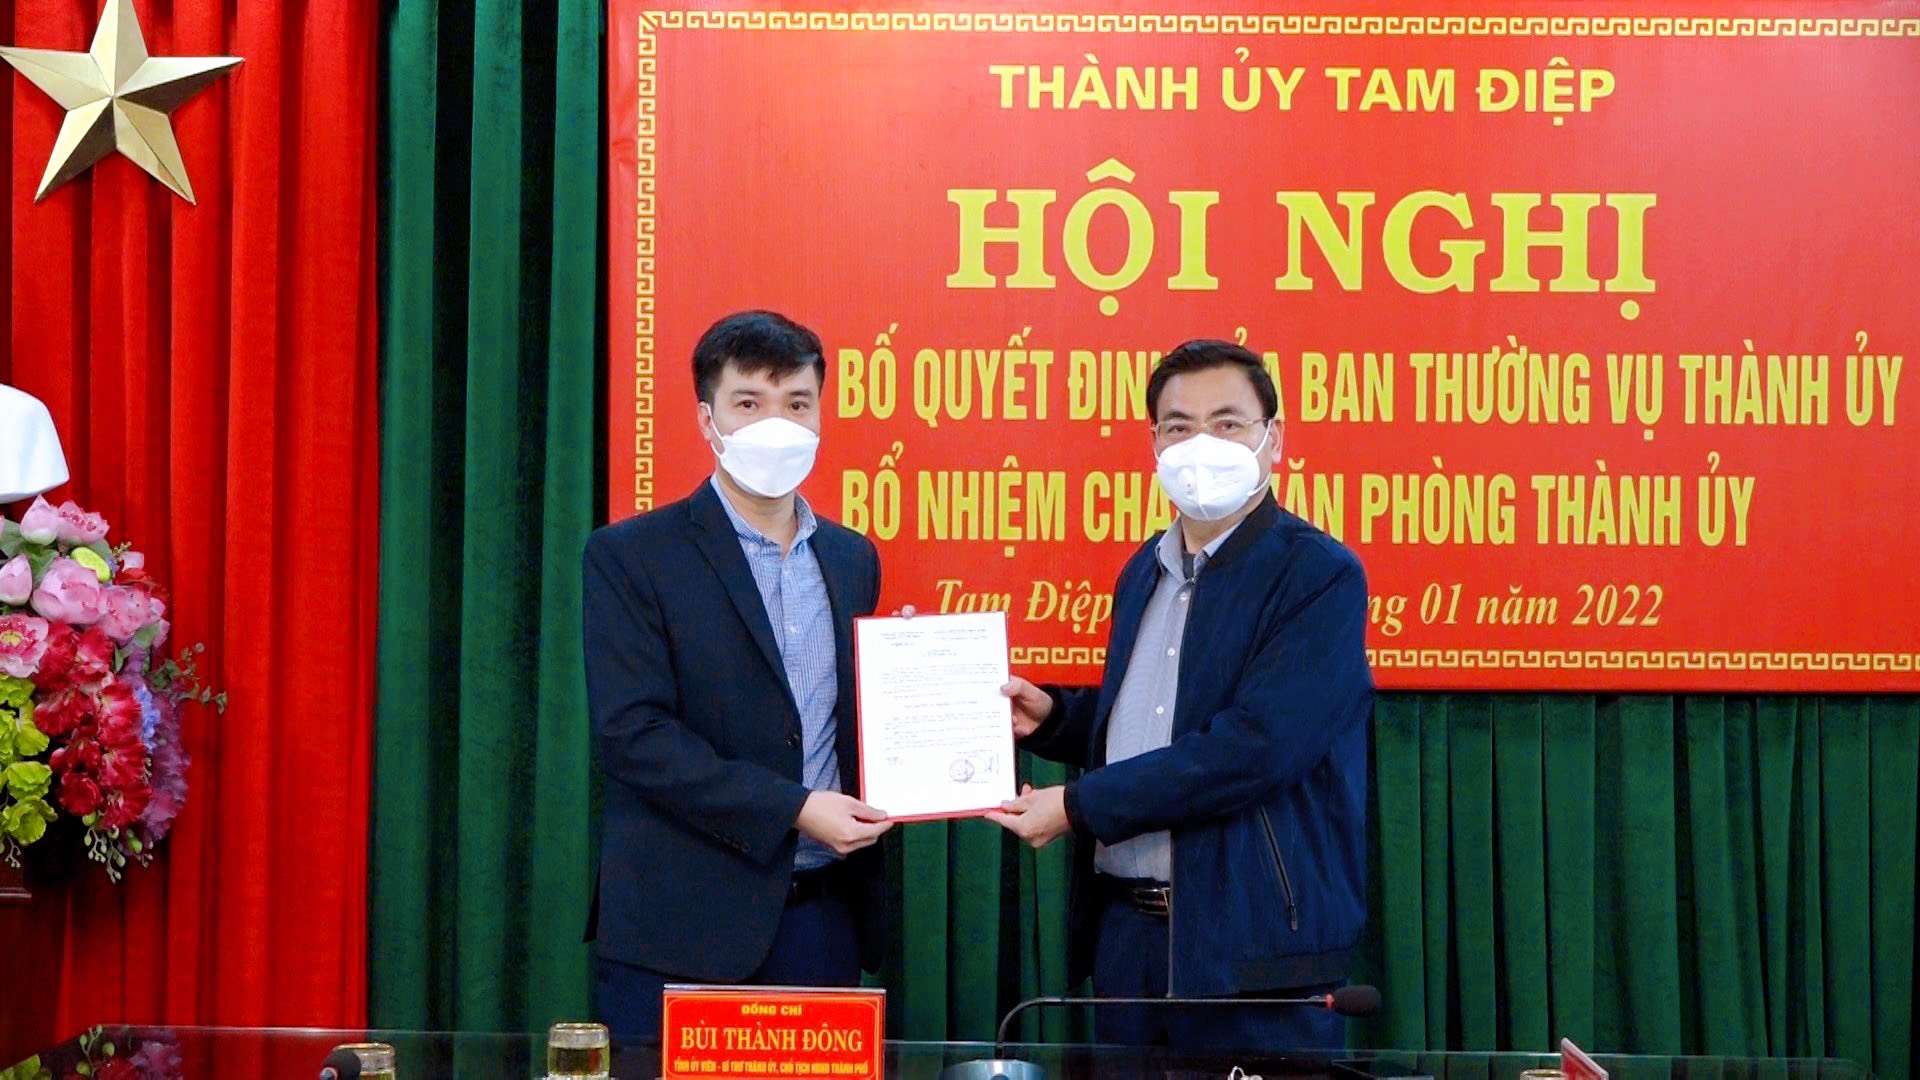 Ban Thường vụ Thành ủy Tam Điệp trao quyết định bổ nhiệm Chánh văn phòng Thành ủy cho đồng chí Lâm Quang Linh.